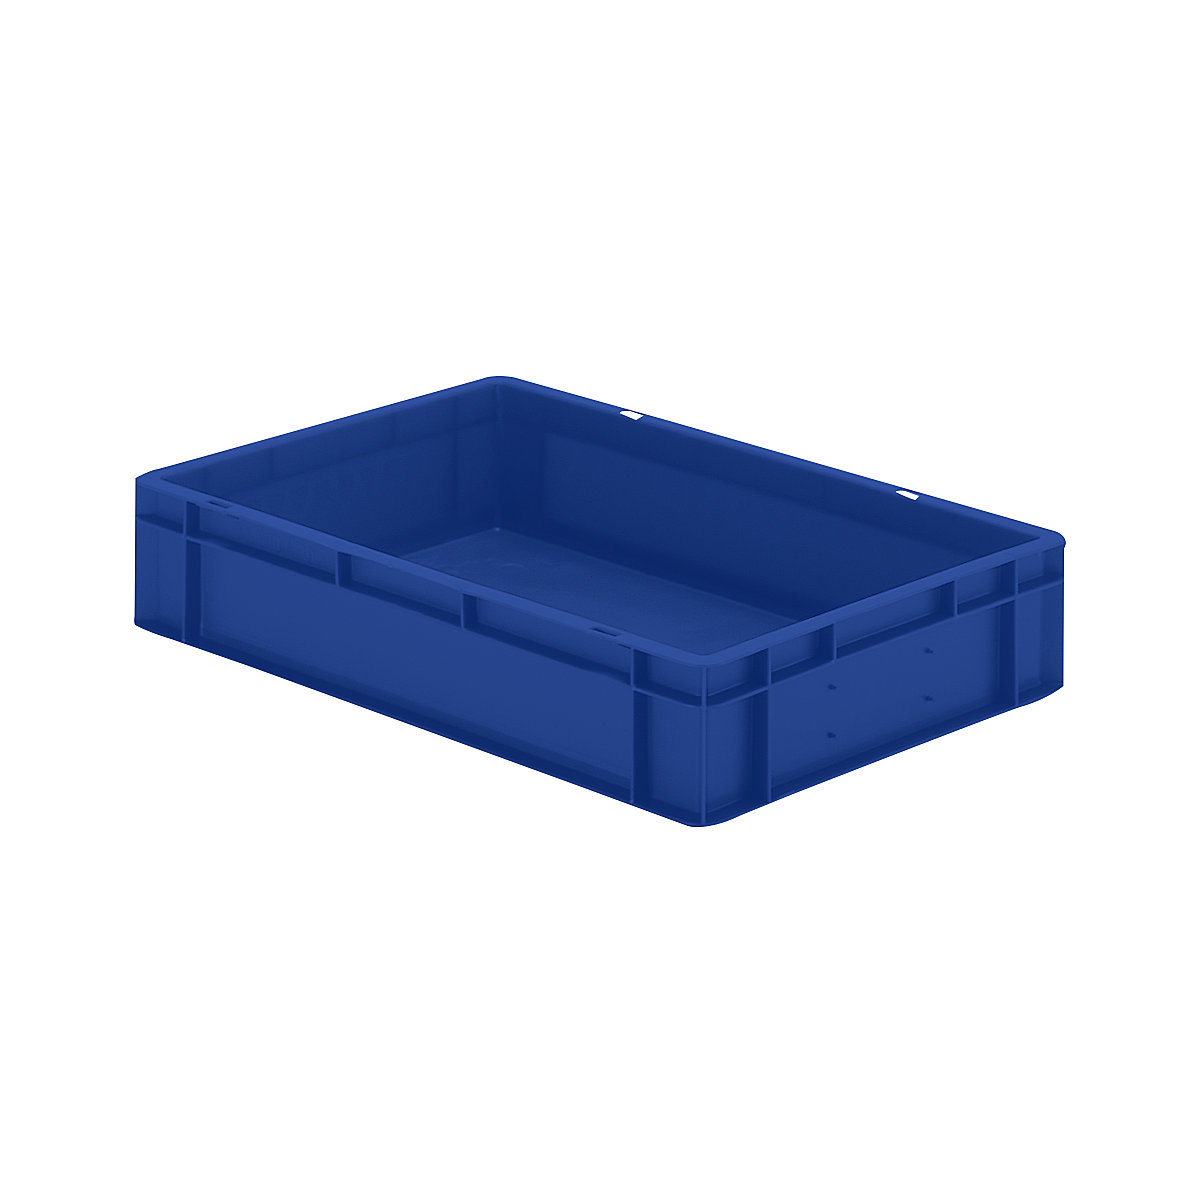 Euro-Format-Stapelbehälter, Wände und Boden geschlossen, LxBxH 600 x 400 x 120 mm, blau, VE 5 Stk